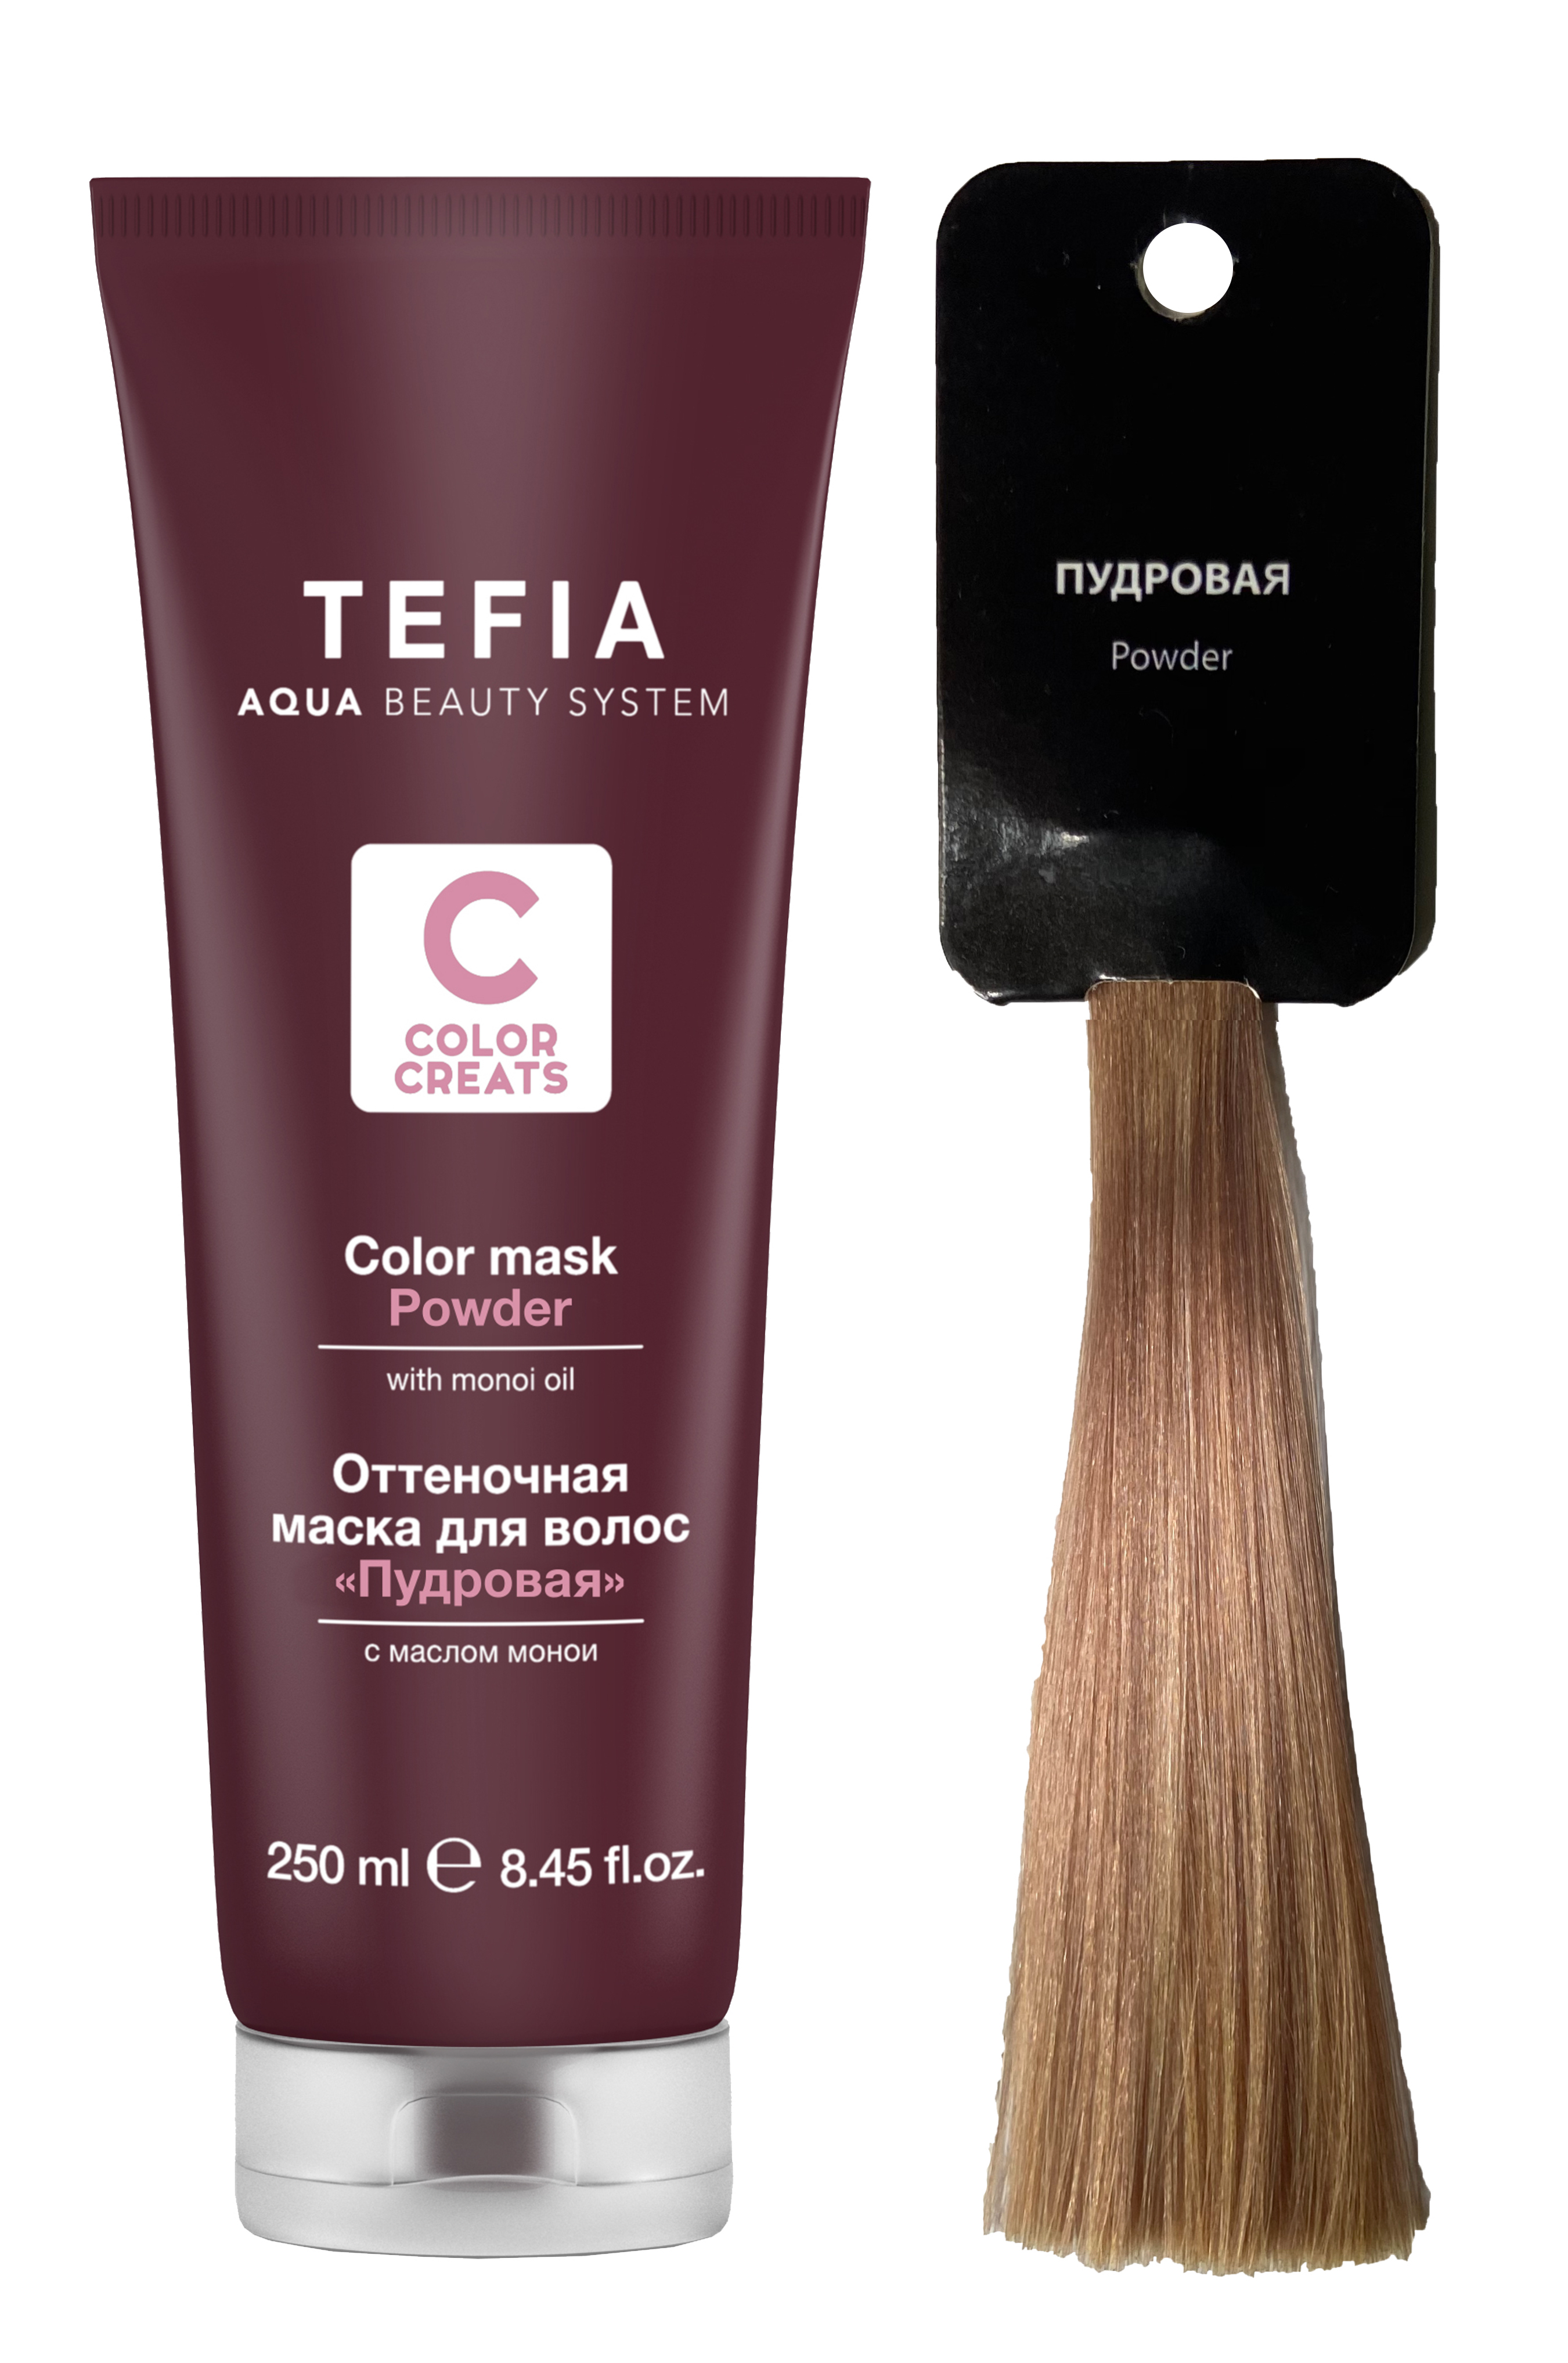 Купить Маска TEFIA оттеночная для волос с маслом монои Пудровая 250мл, Линия COLOR CREATS